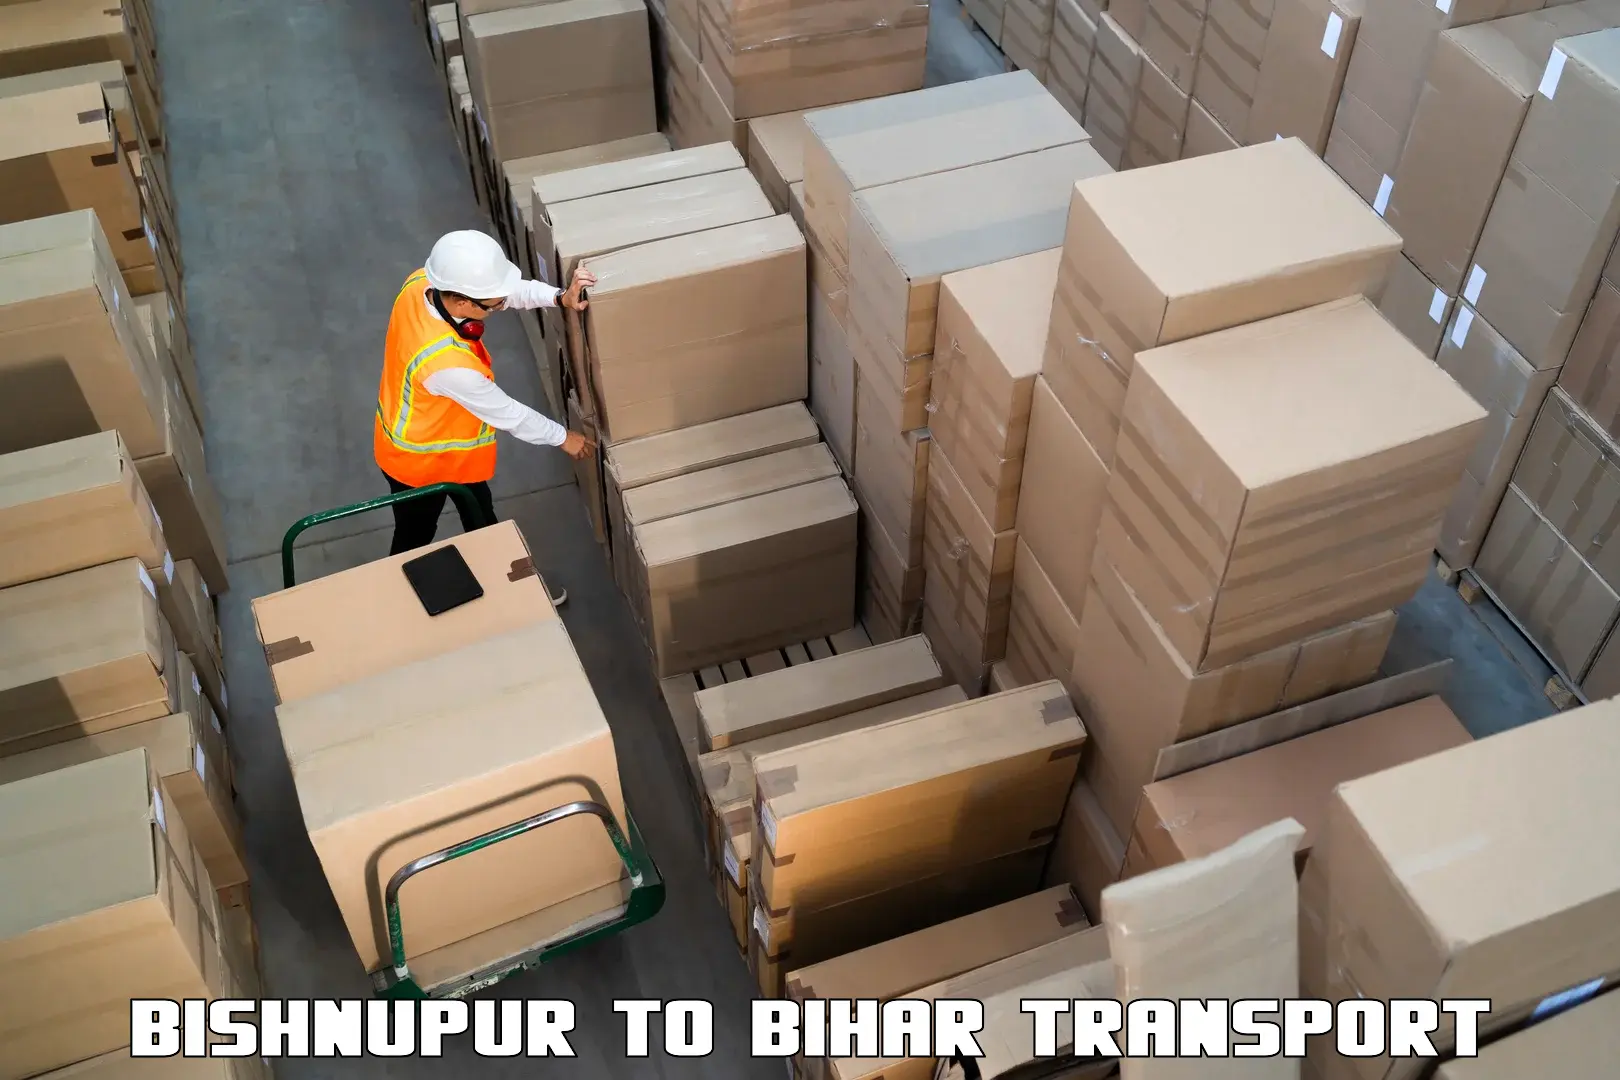 Lorry transport service Bishnupur to Bharwara